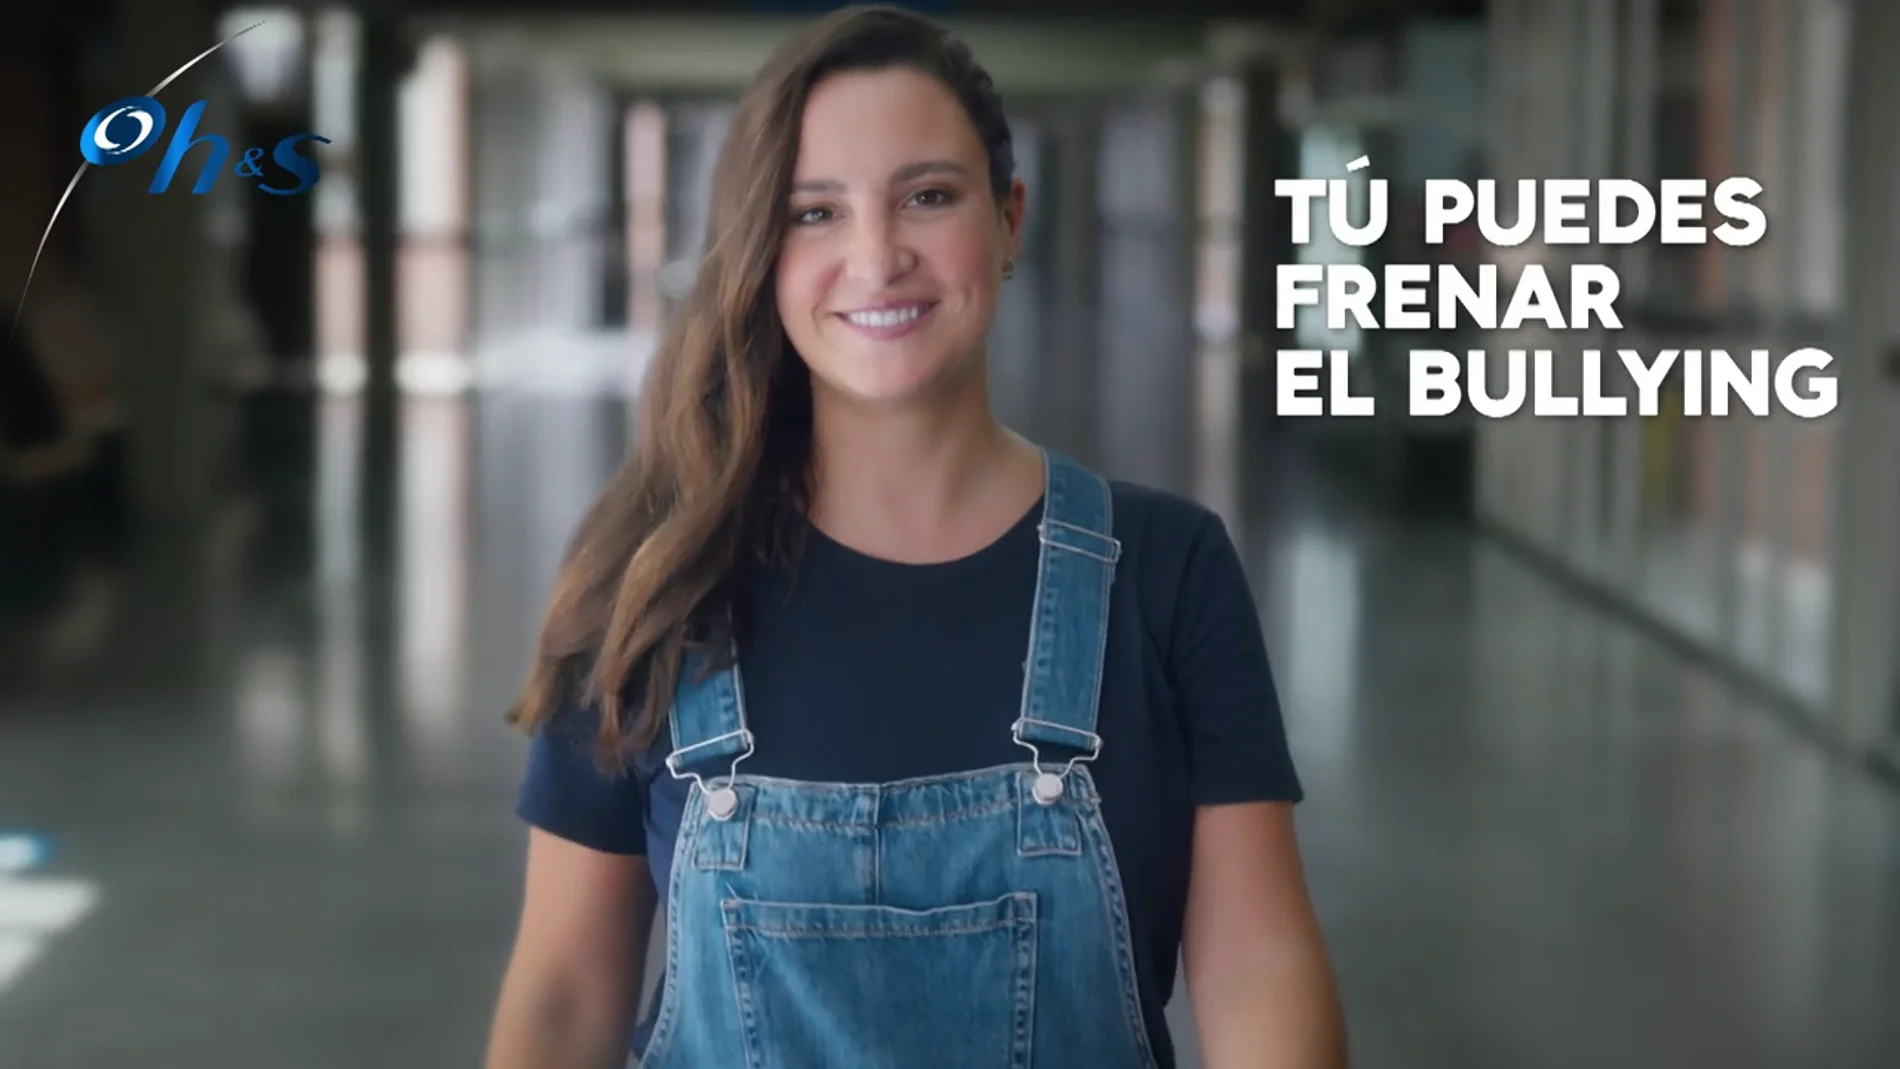 Marta Pombo: "Reír la gracia te hace partícipe del bullying"